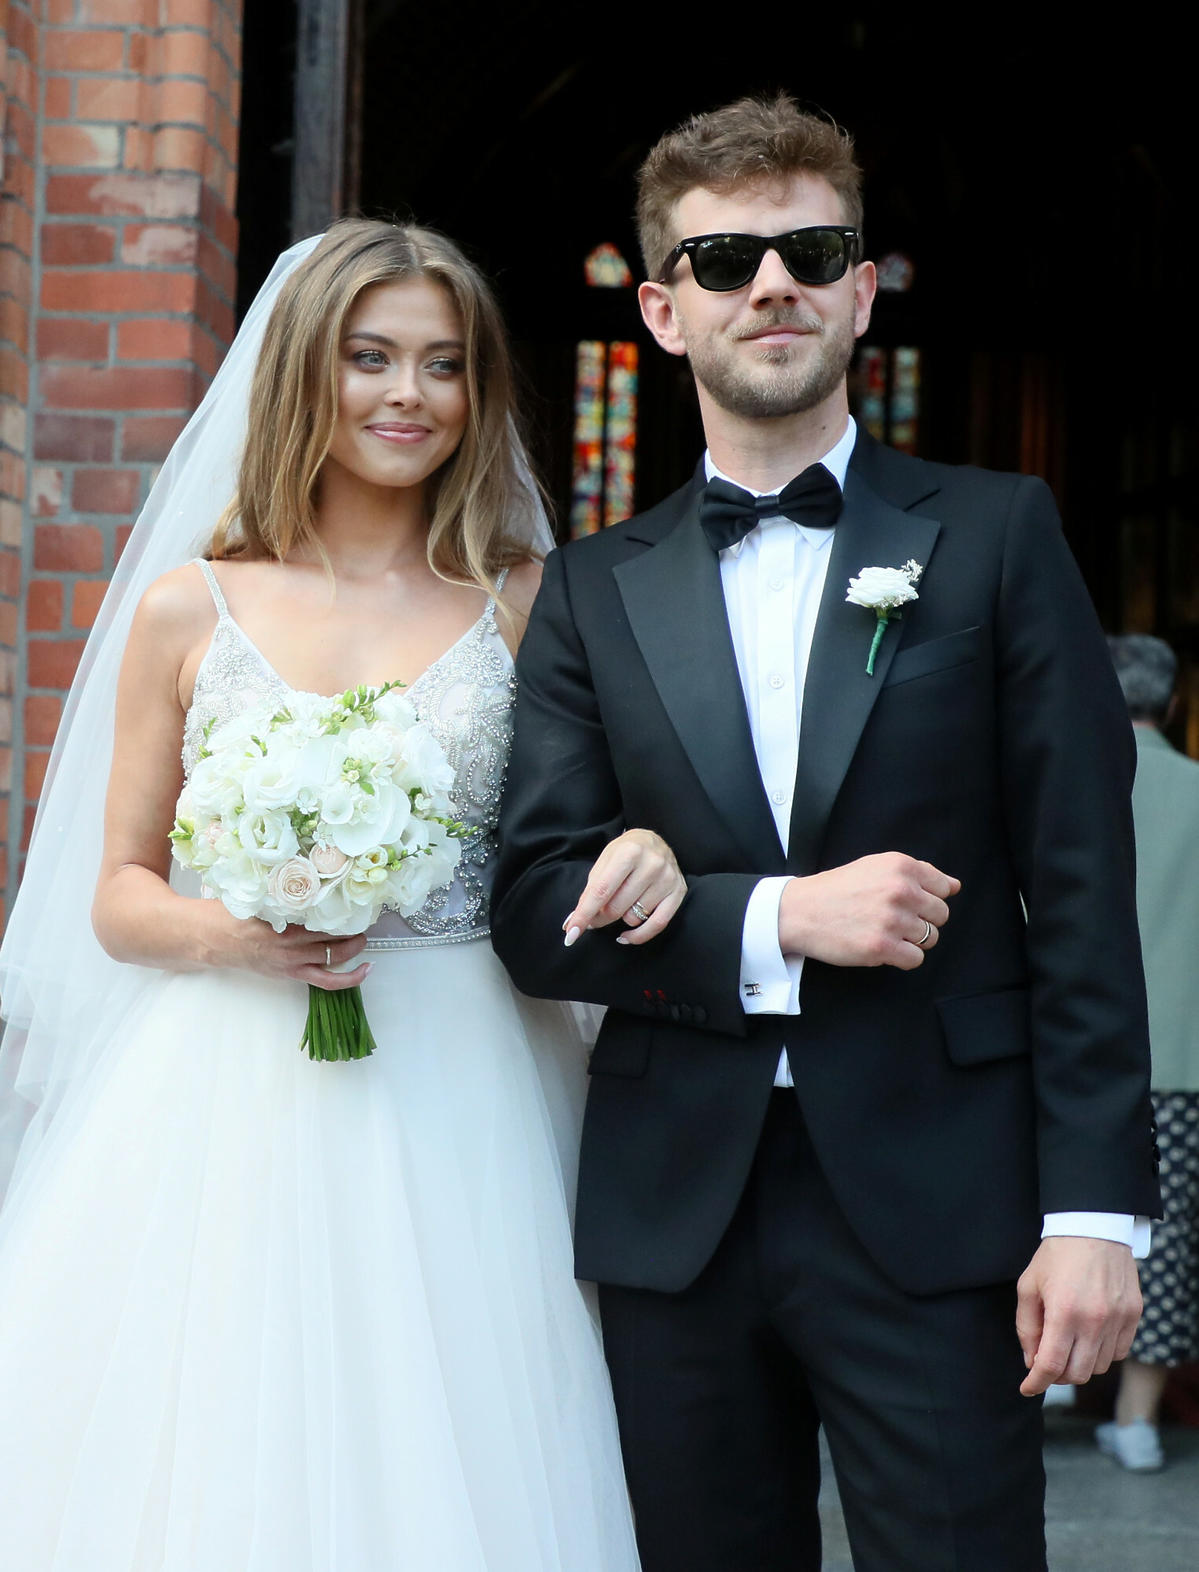 Joanna Opozda i Antoni Królikowski wzięli ślub